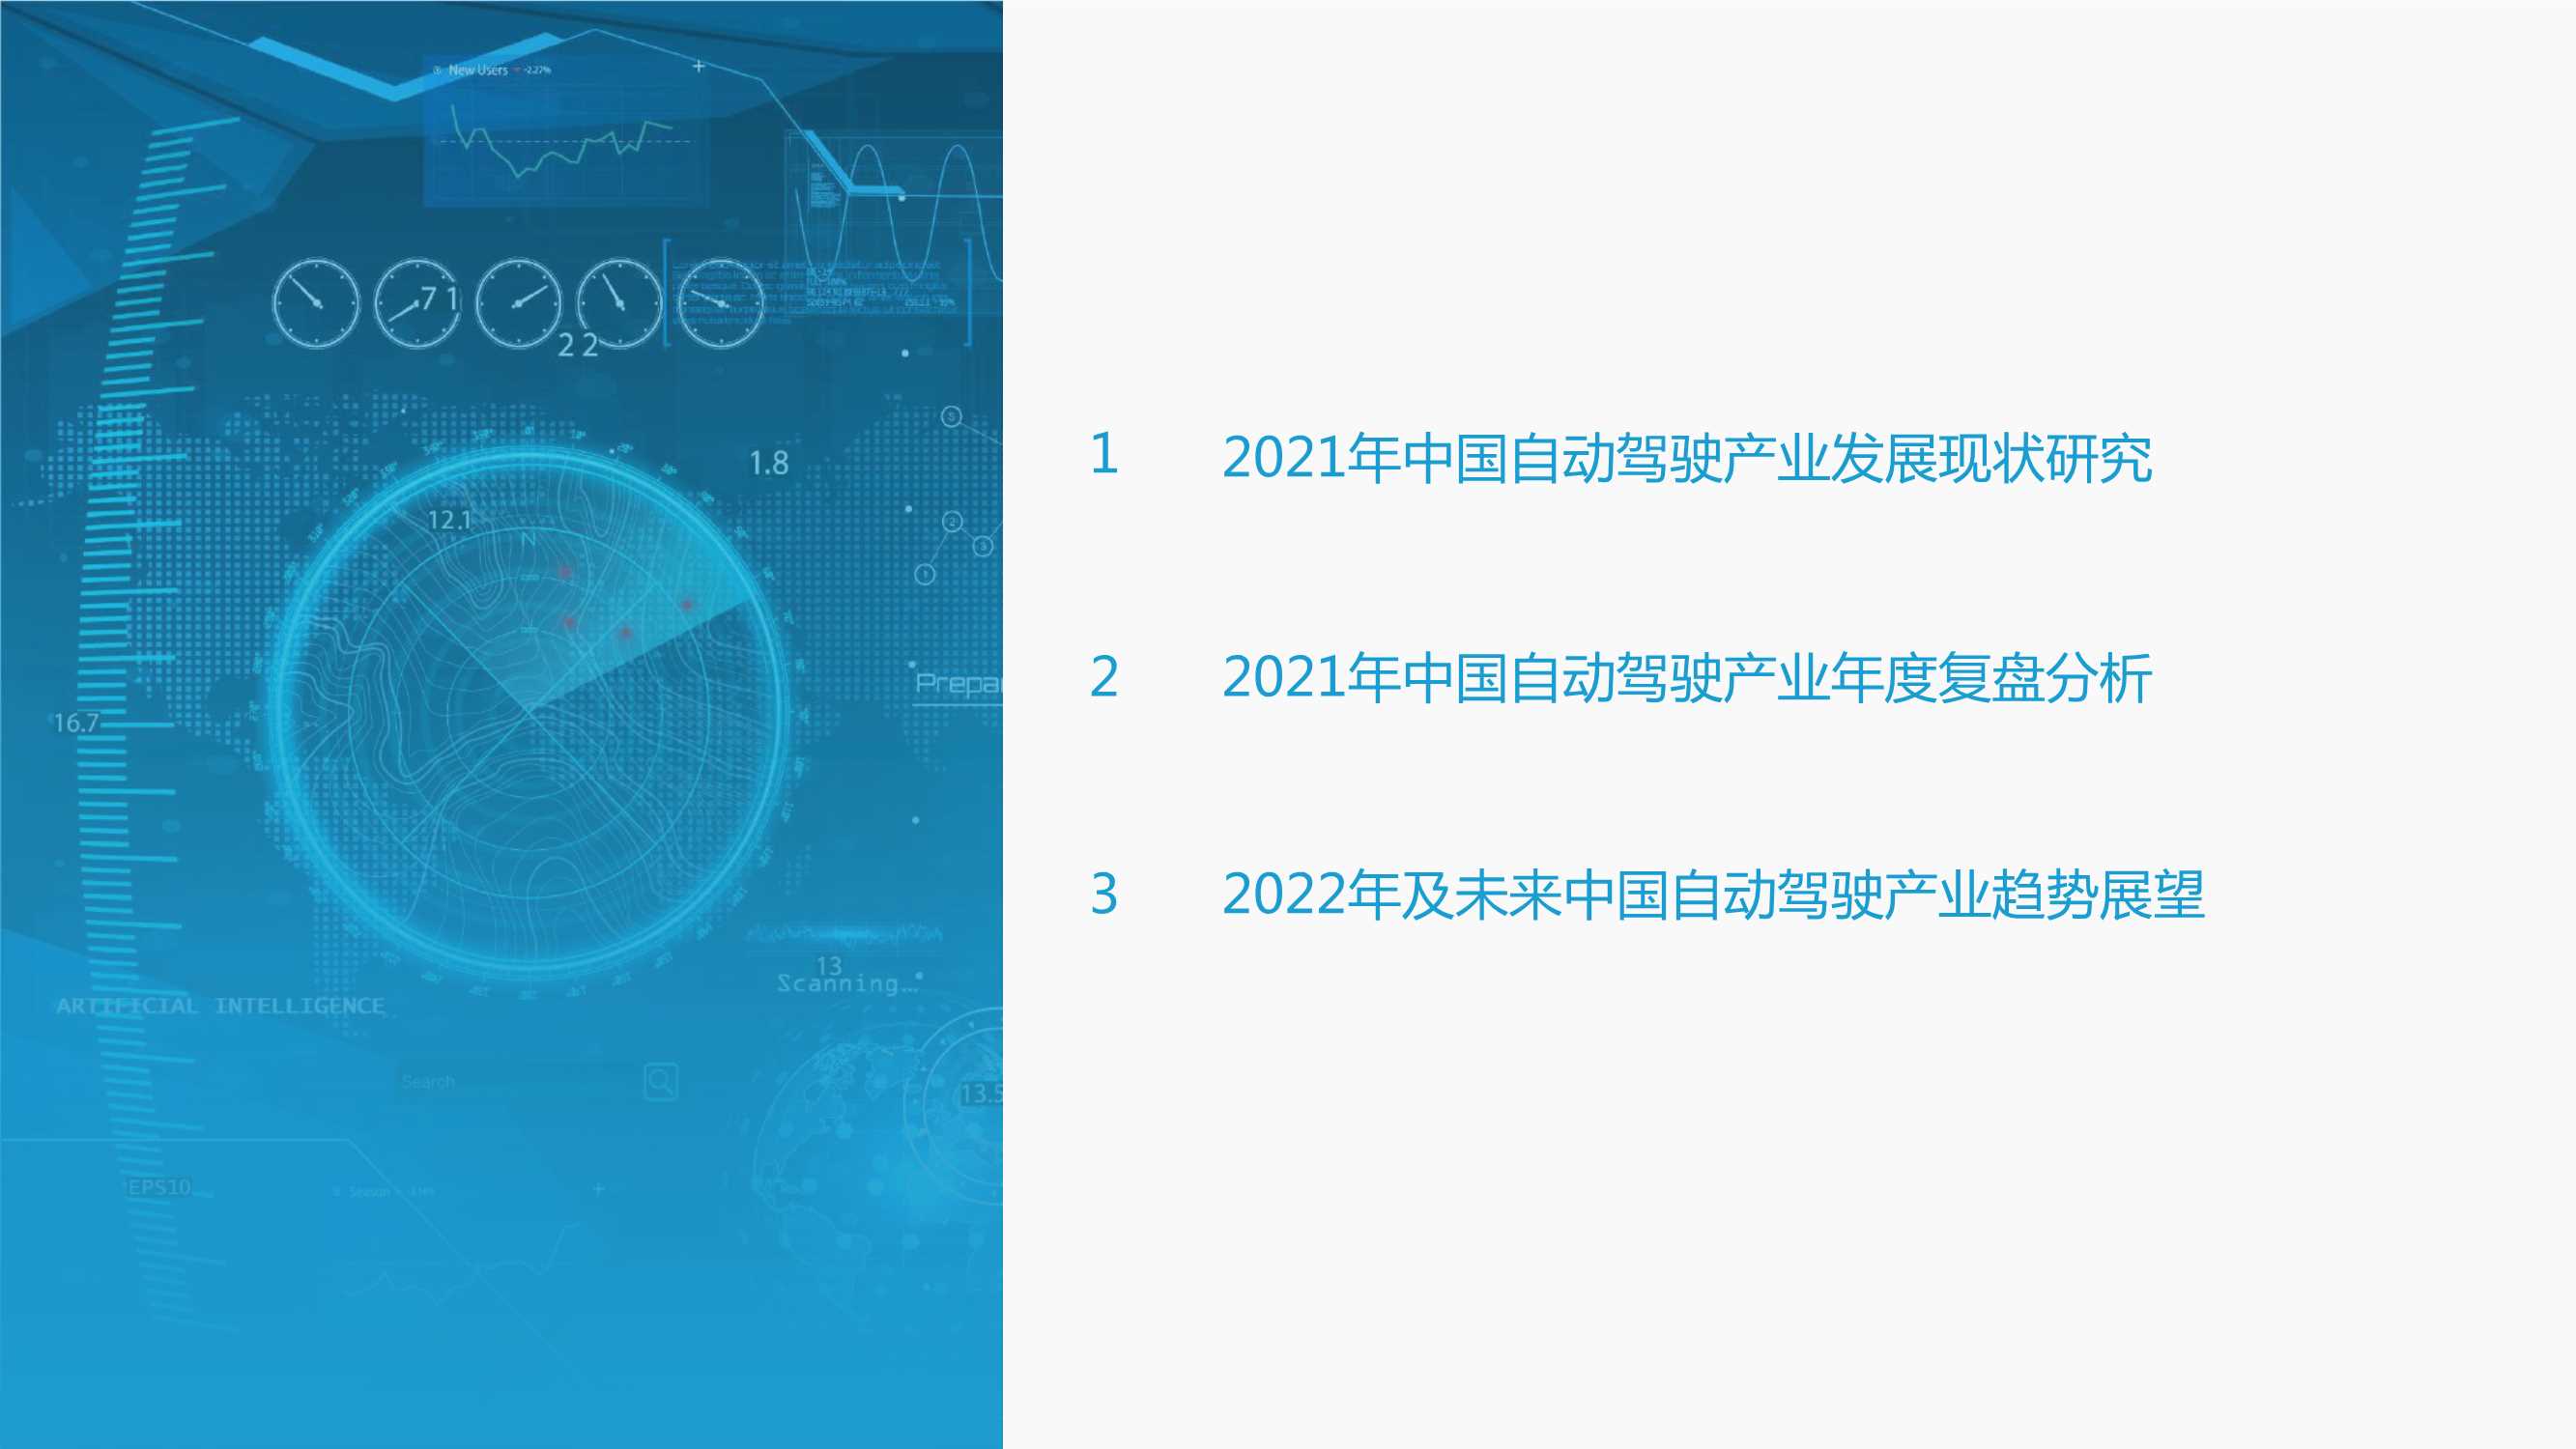 亿欧智库-2021-2022中国自动驾驶产业年度总结报告-2022.02-47页